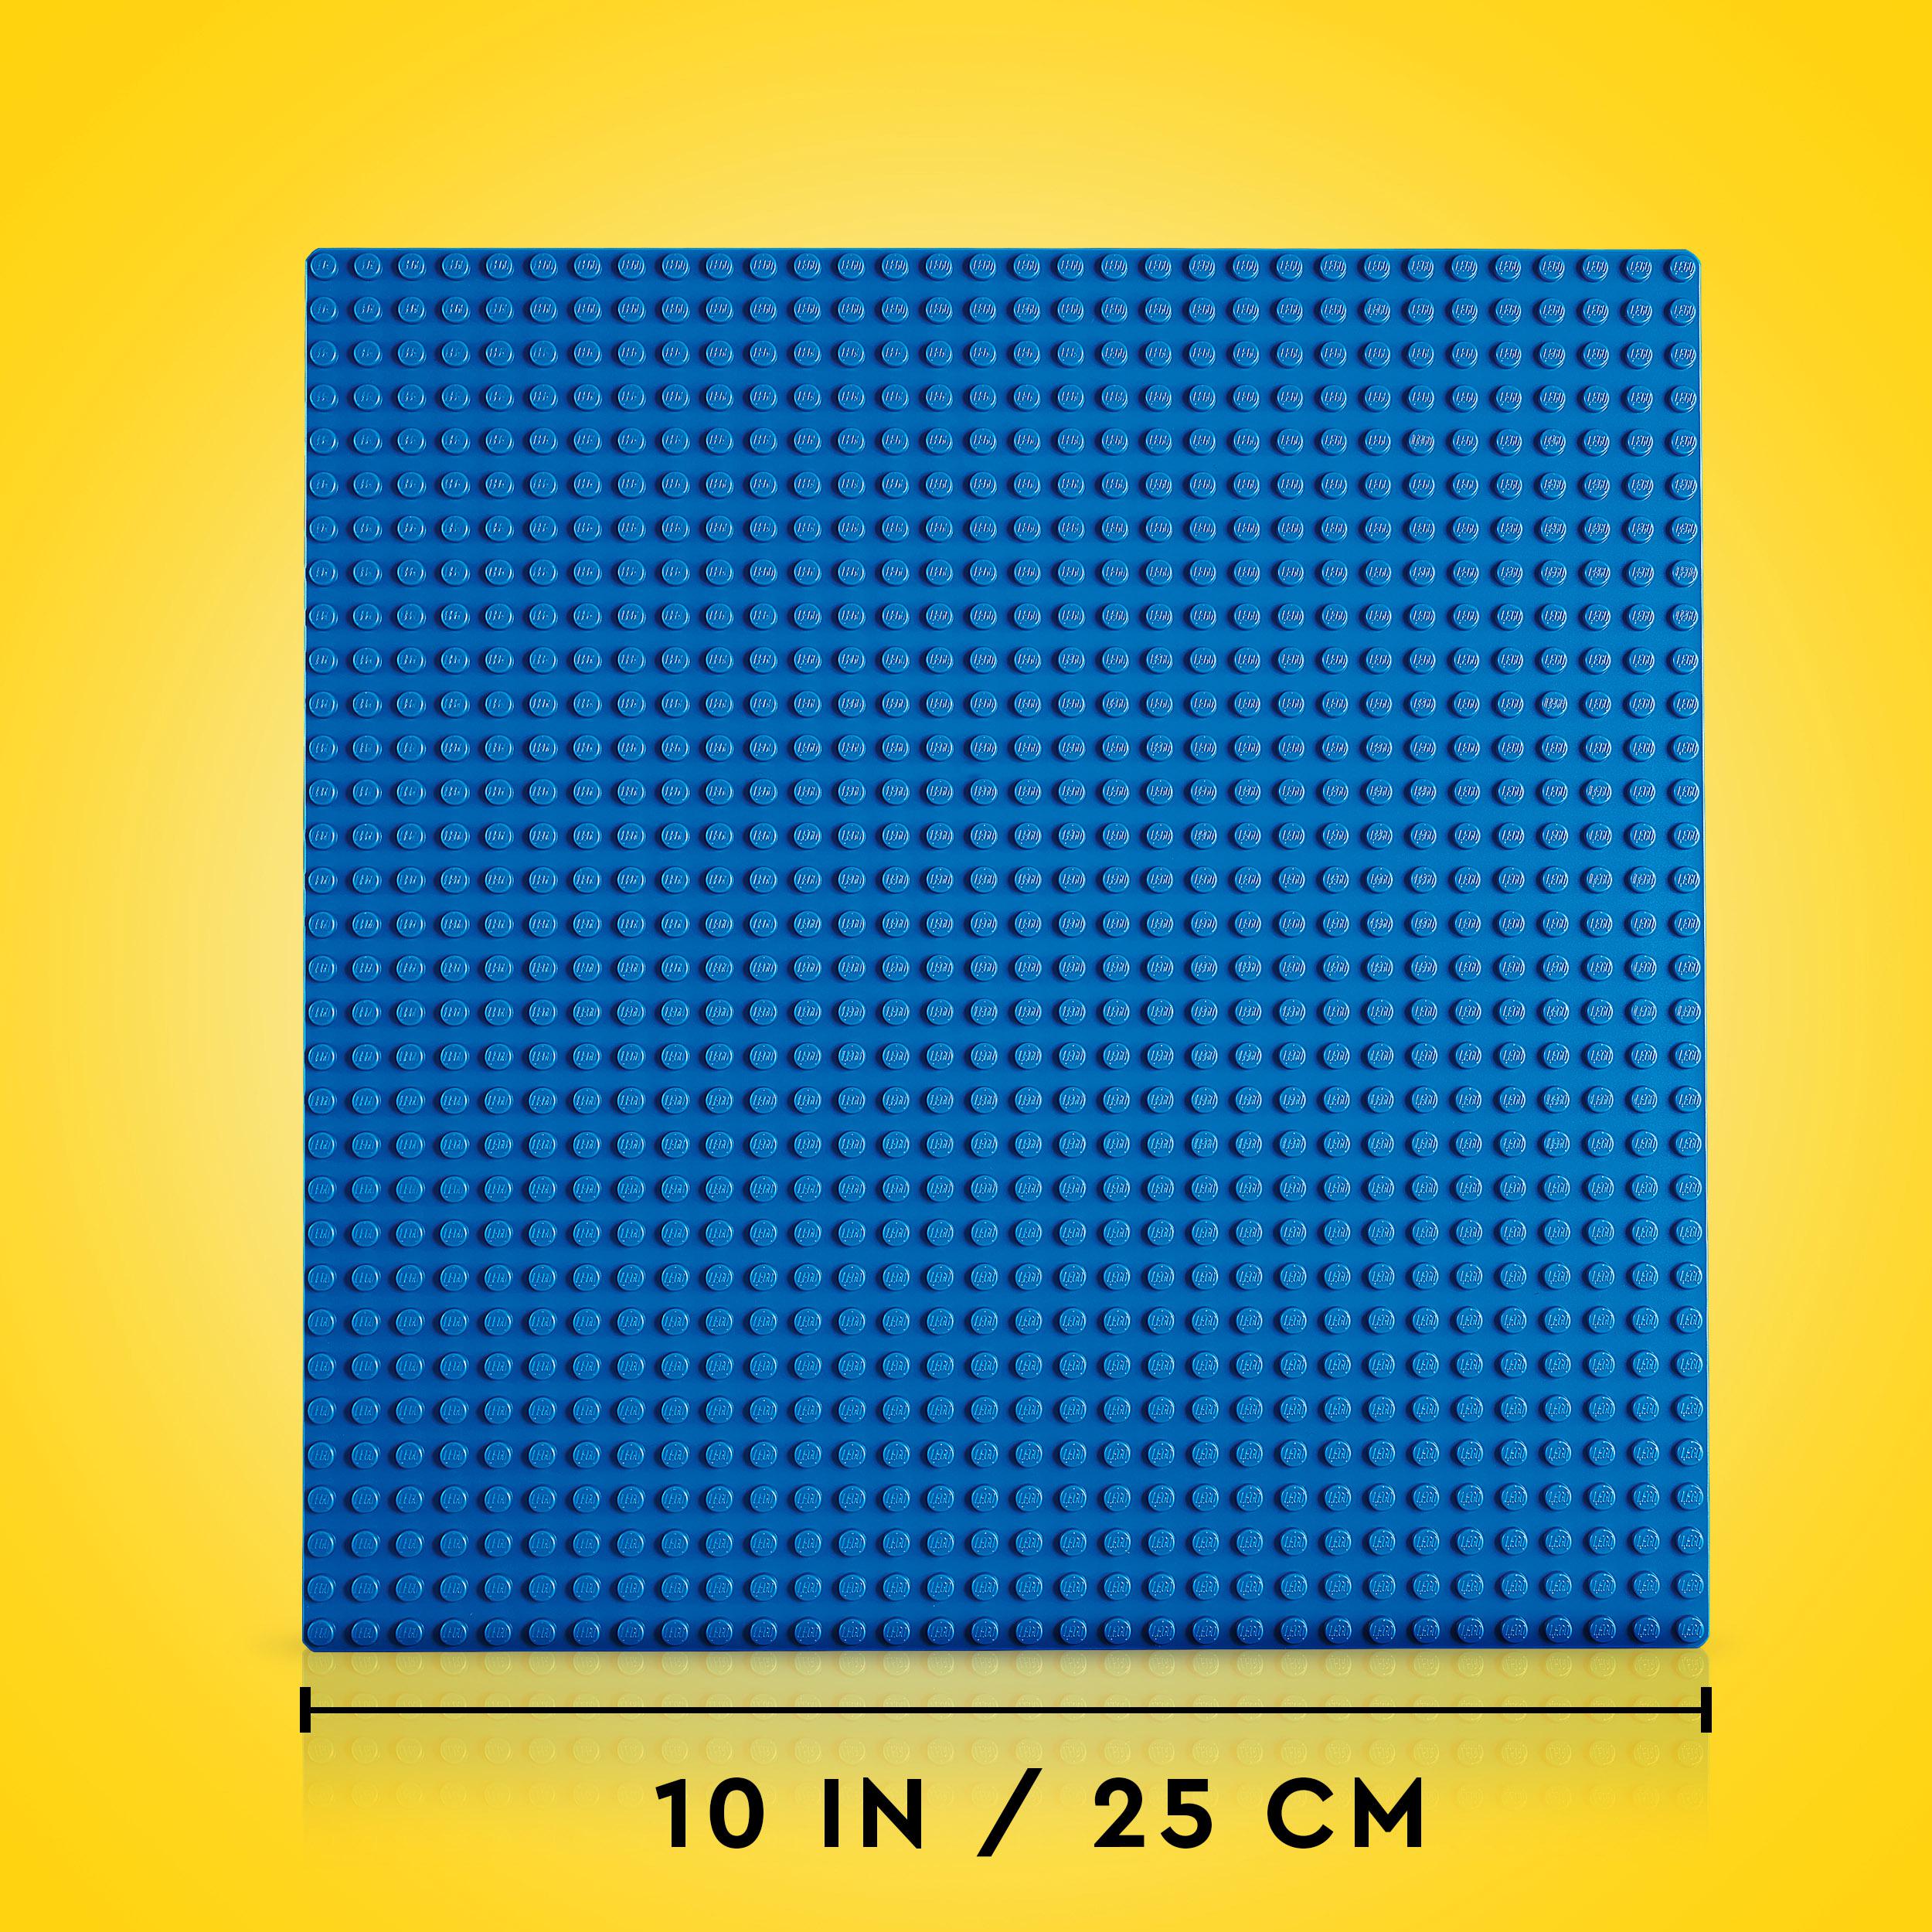 Lego classic 11025 base blu, tavola per costruzioni quadrata con 32x32 bottoncini, piattaforma classica per mattoncini - LEGO CLASSIC, Lego